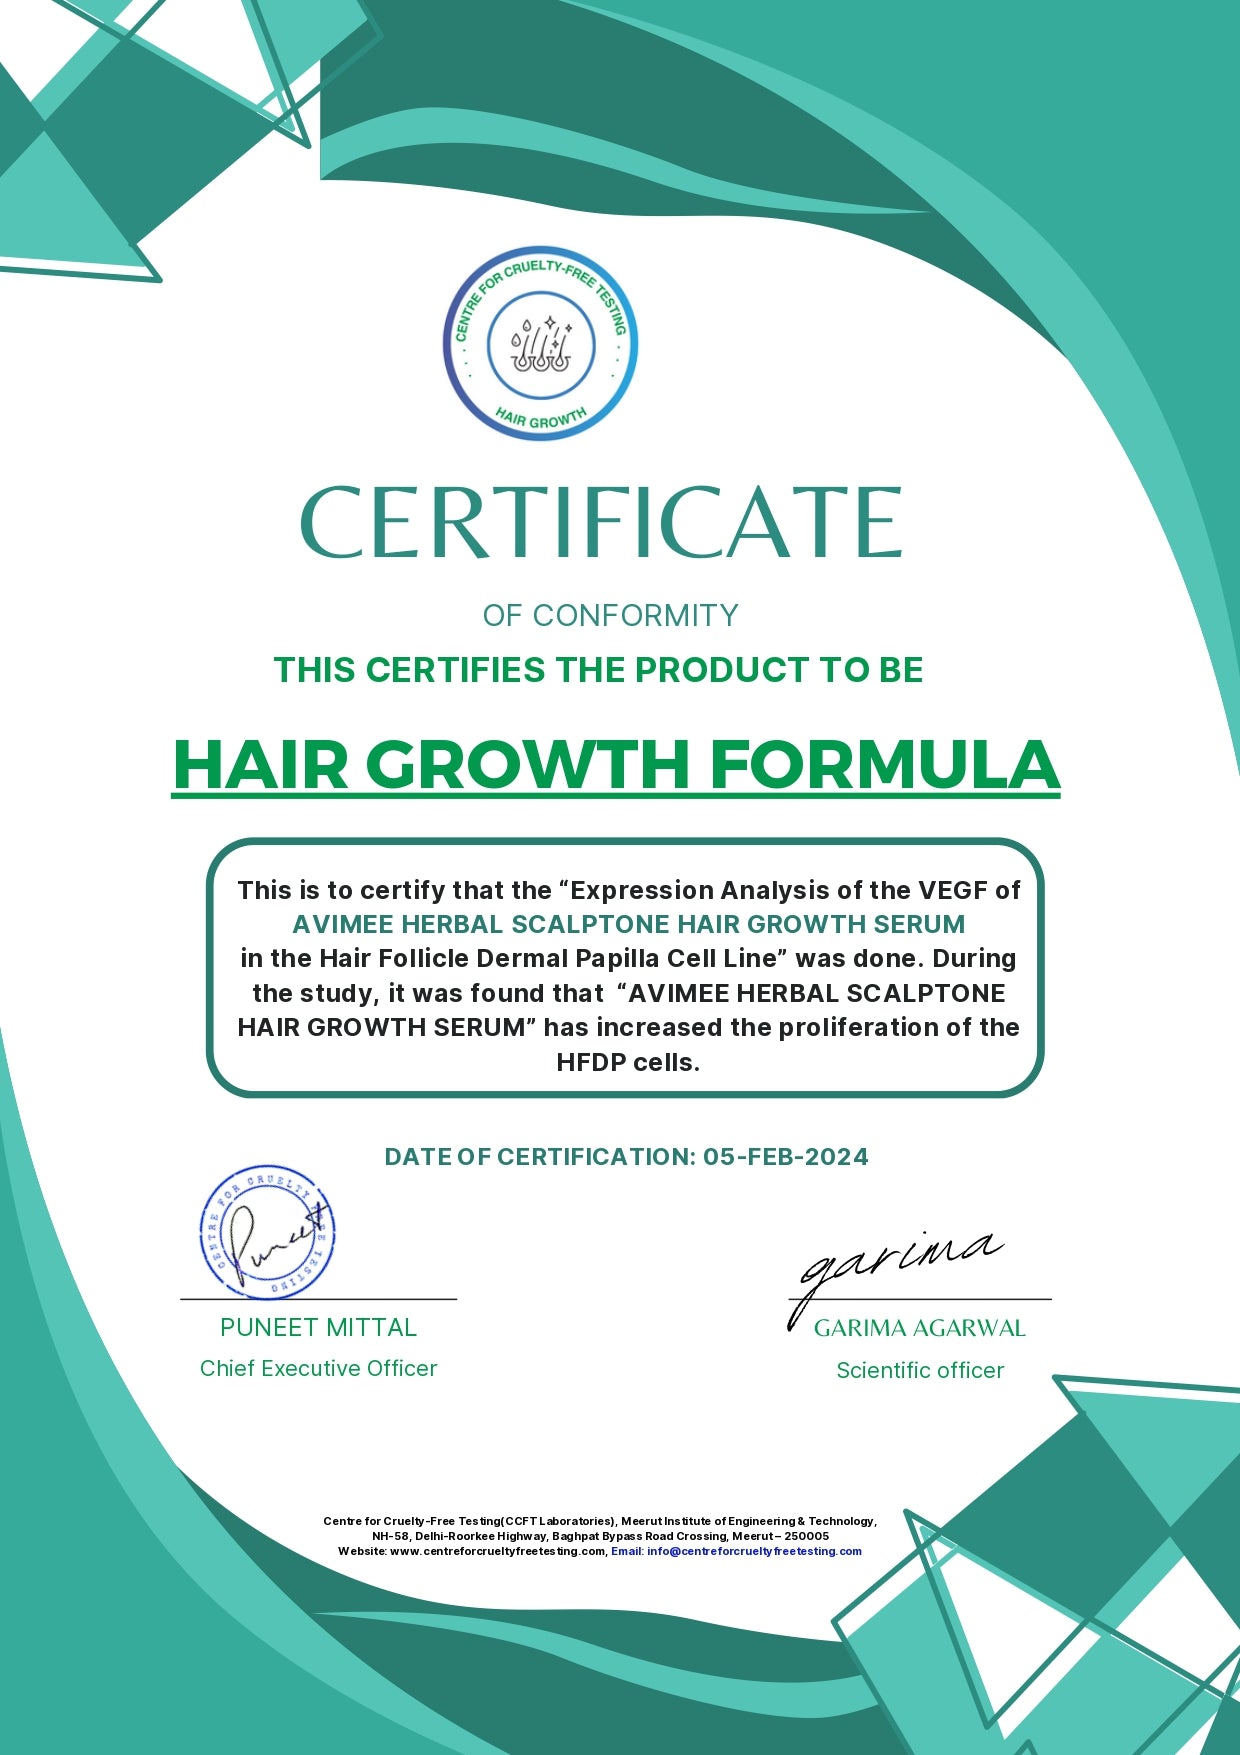 Keshpallav Hair Oil and Scalptone Hair Growth Serum, Super Saver Combo